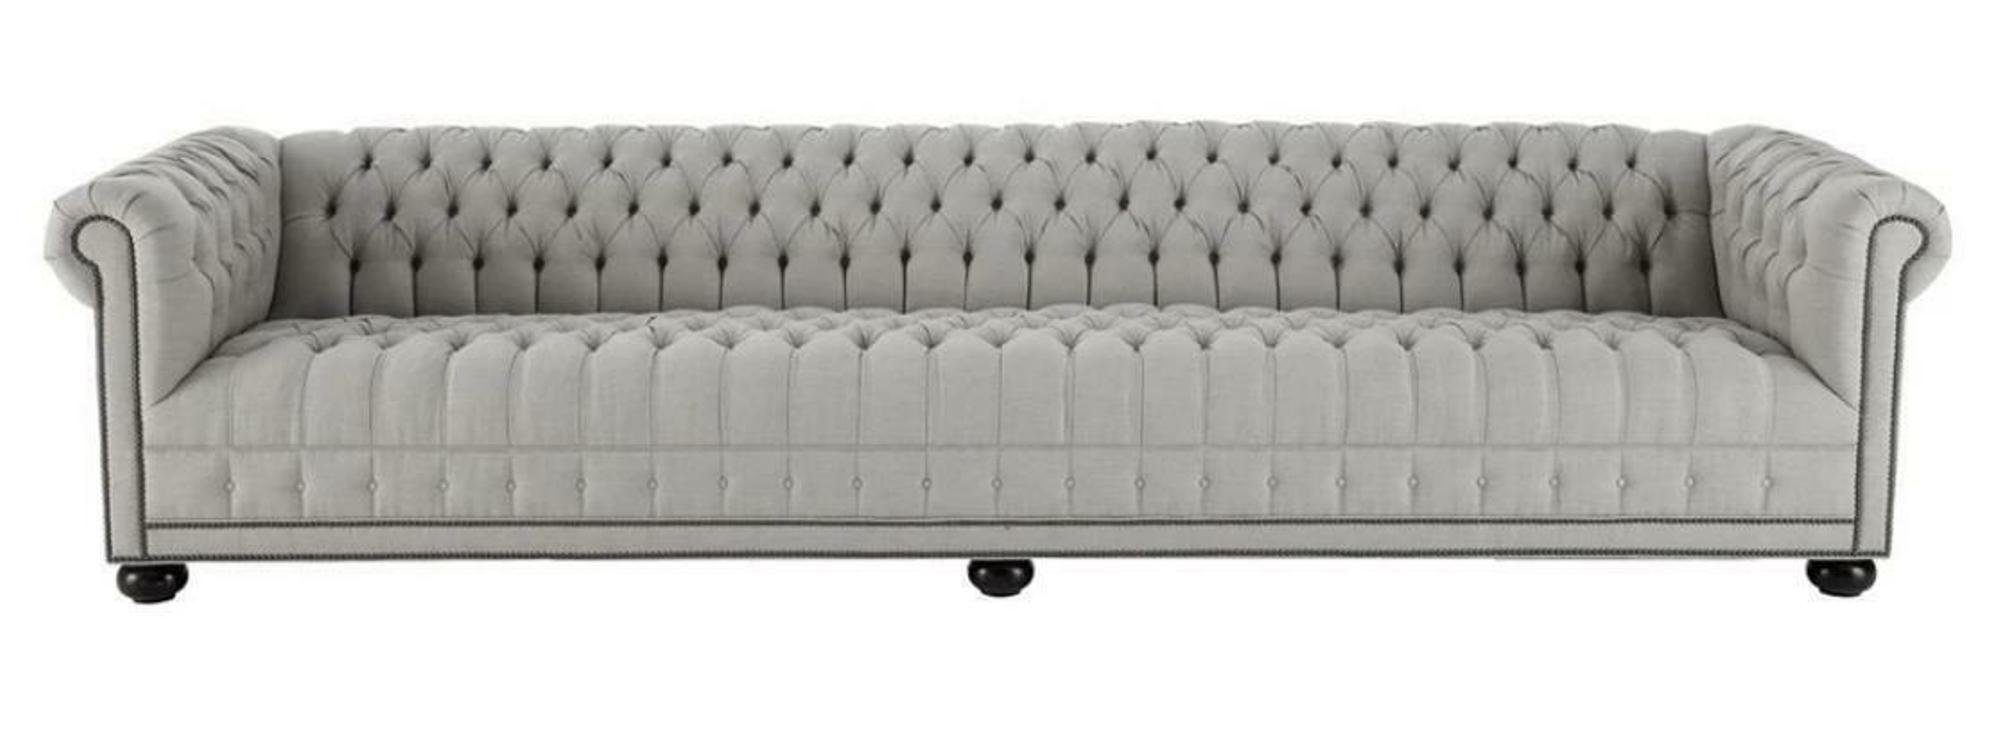 JVmoebel Chesterfield-Sofa, Creme Grau Wohnzimmer Sofa Couchen Viersitzer Chesterfield Design Möbel